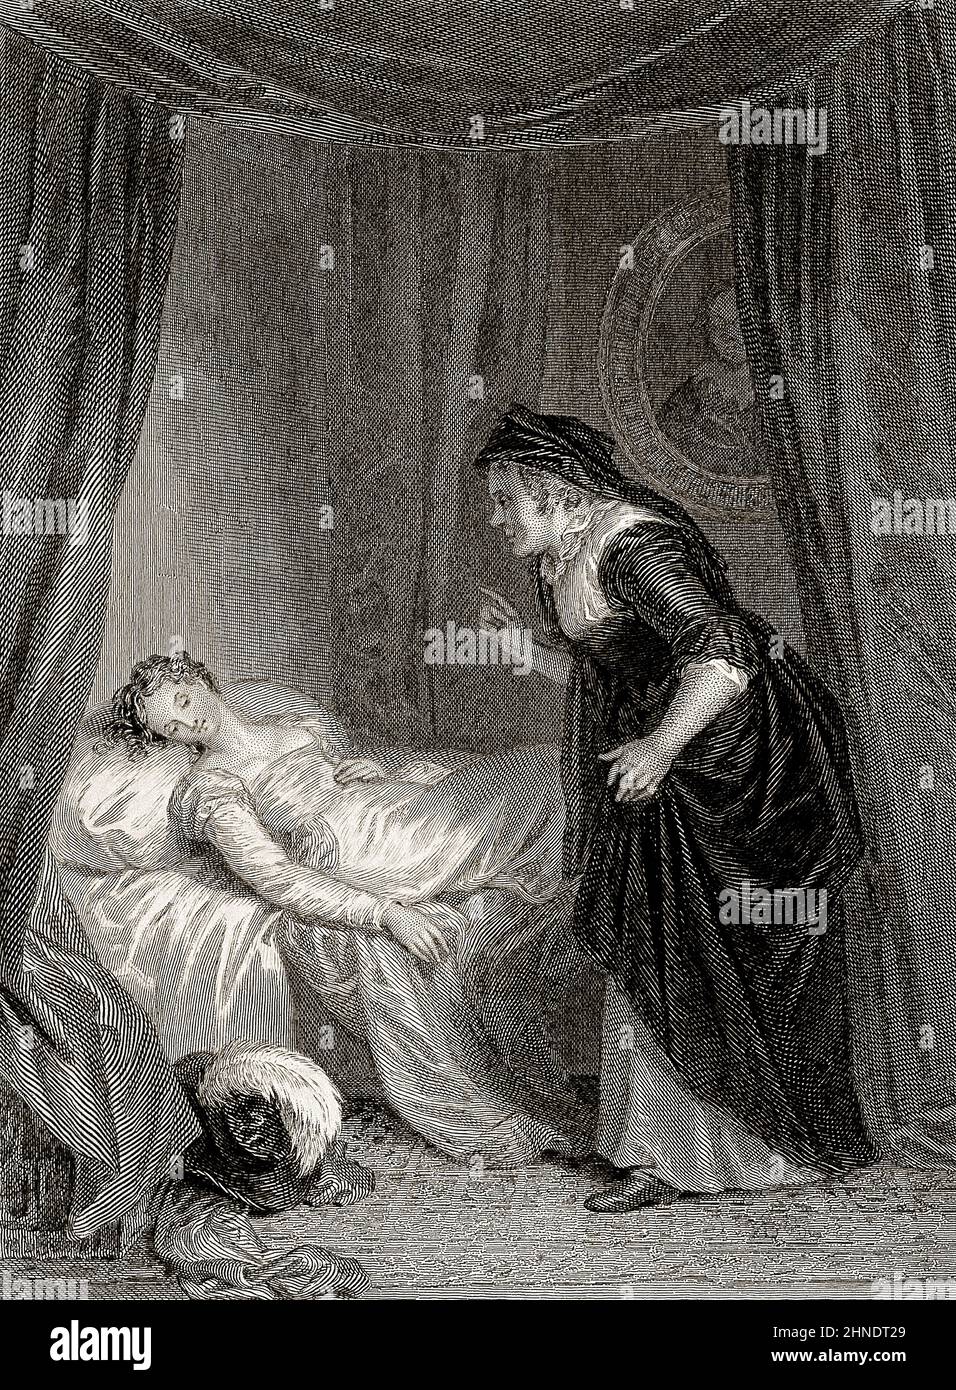 Roméo et Juliette, une tragédie de William Shakespeare Banque D'Images